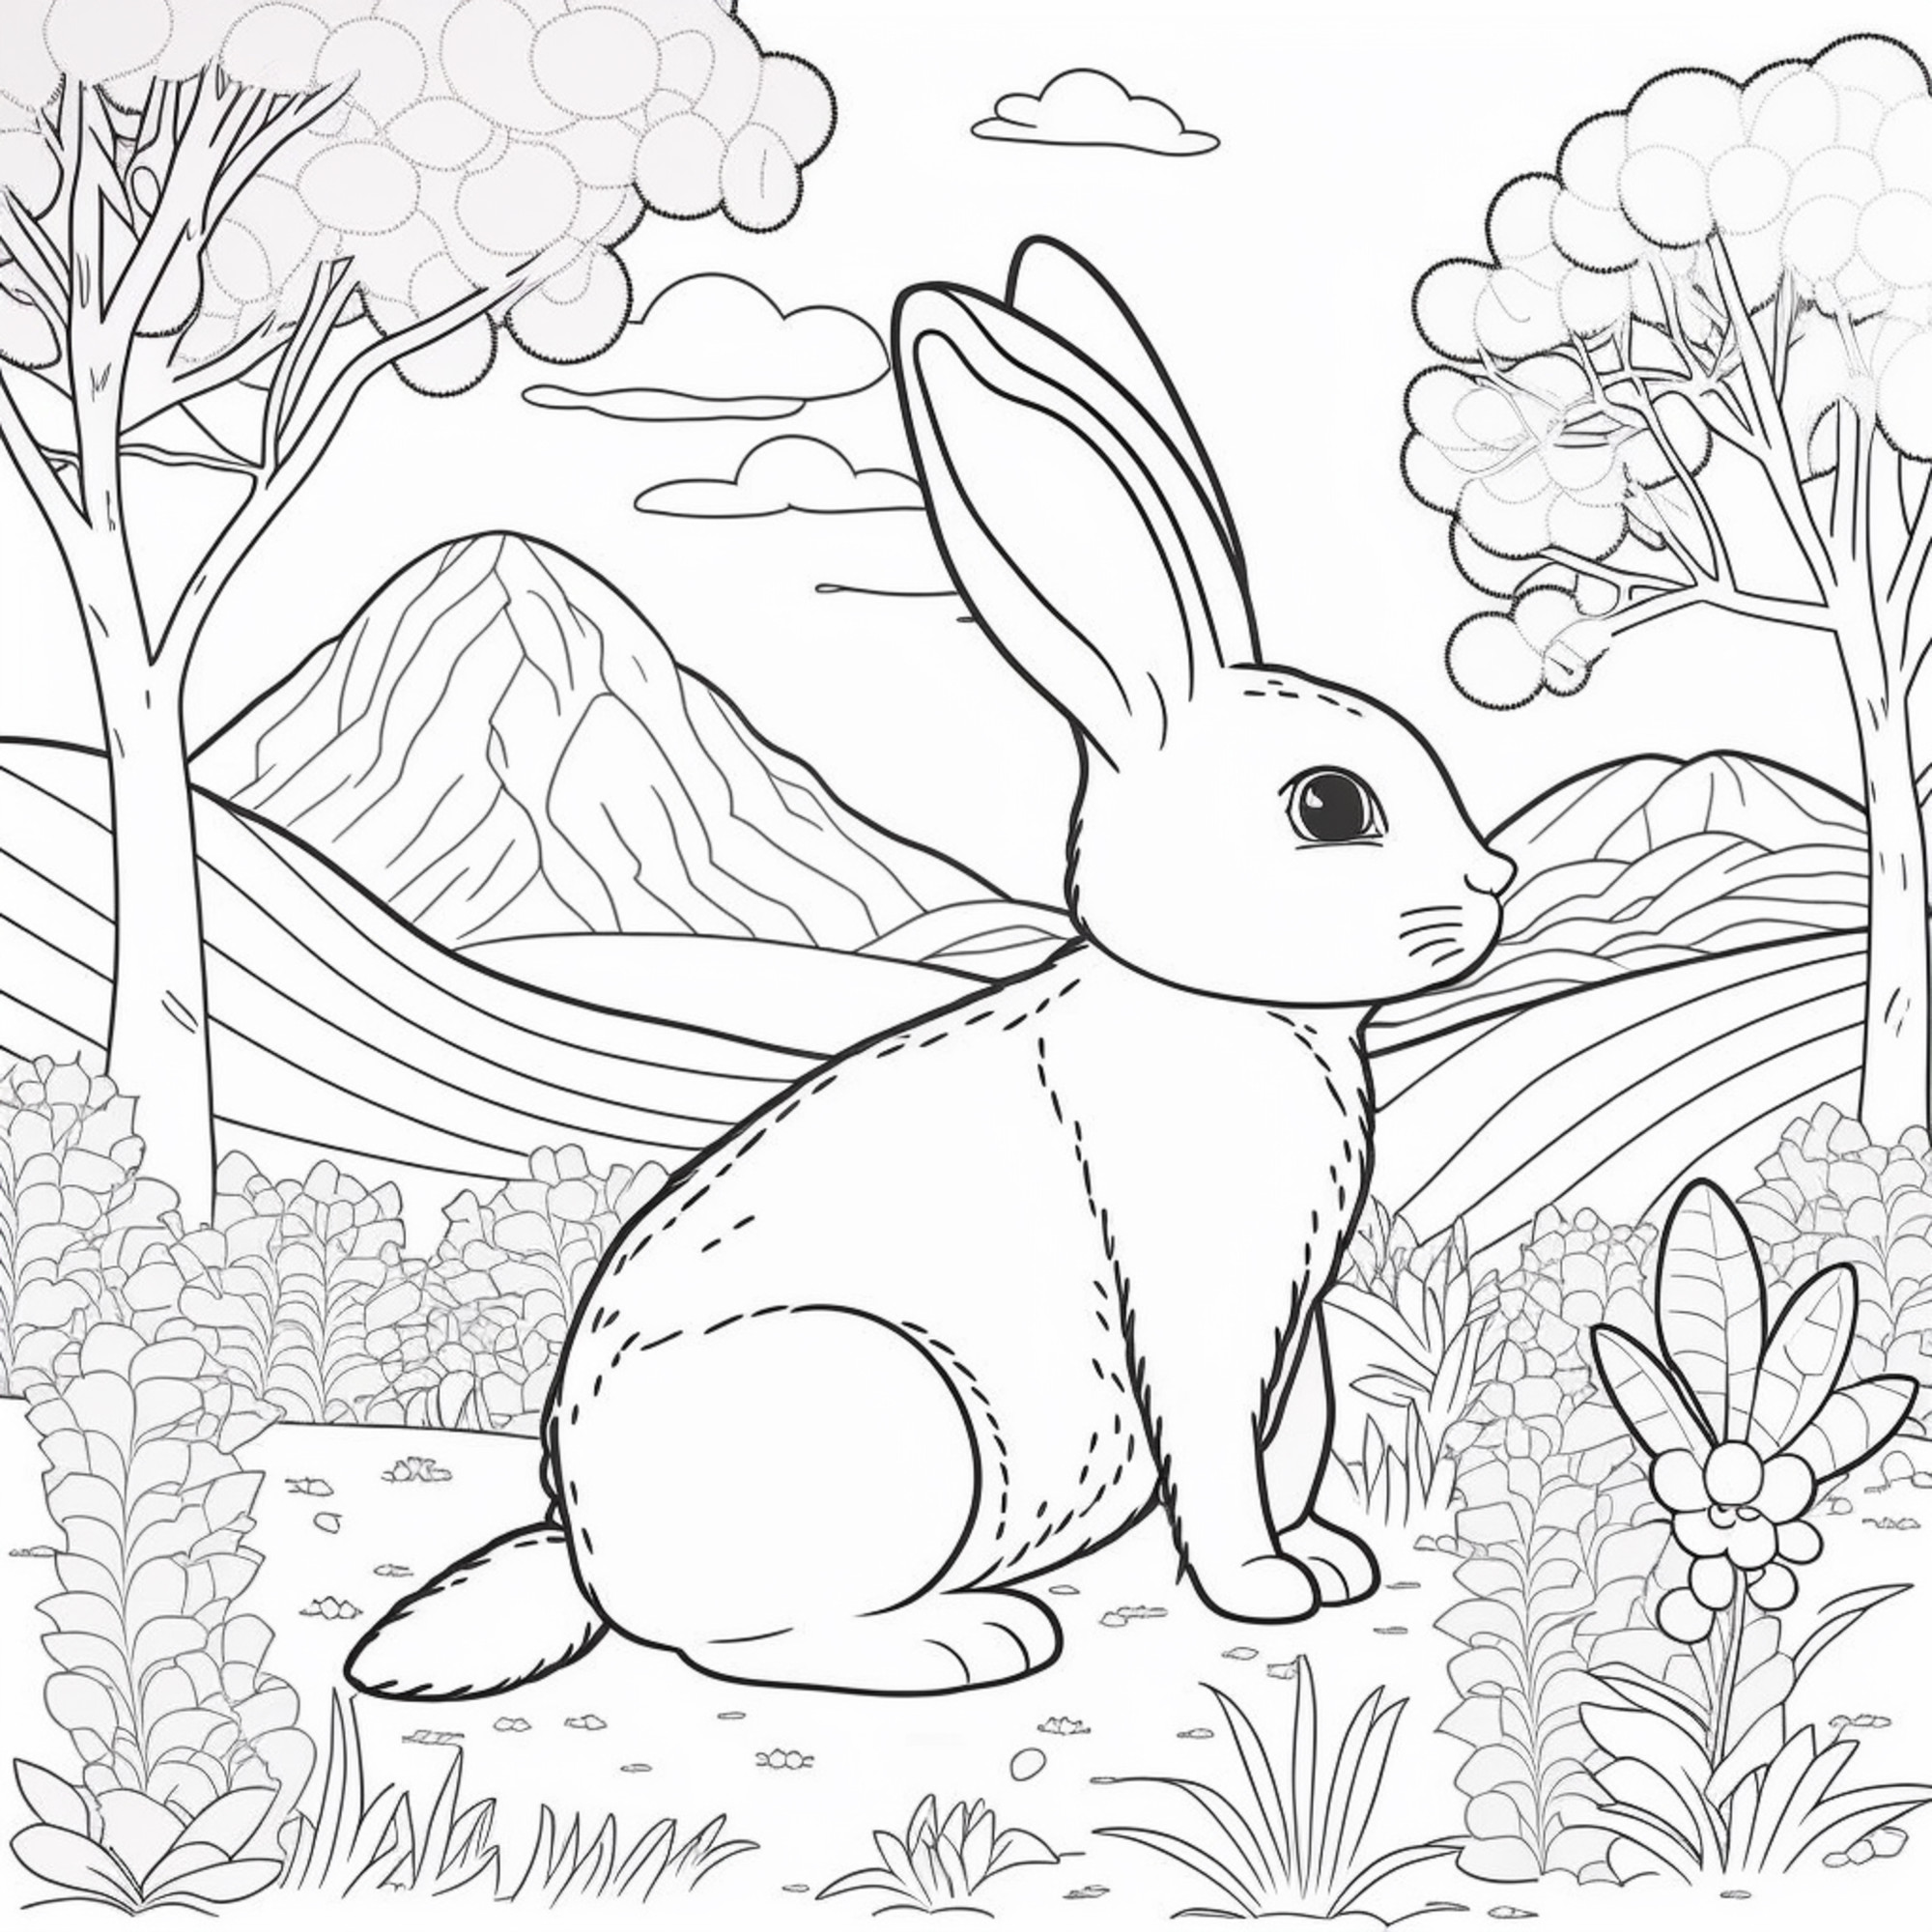 Раскраска для детей: заяц на фоне гор и деревьев